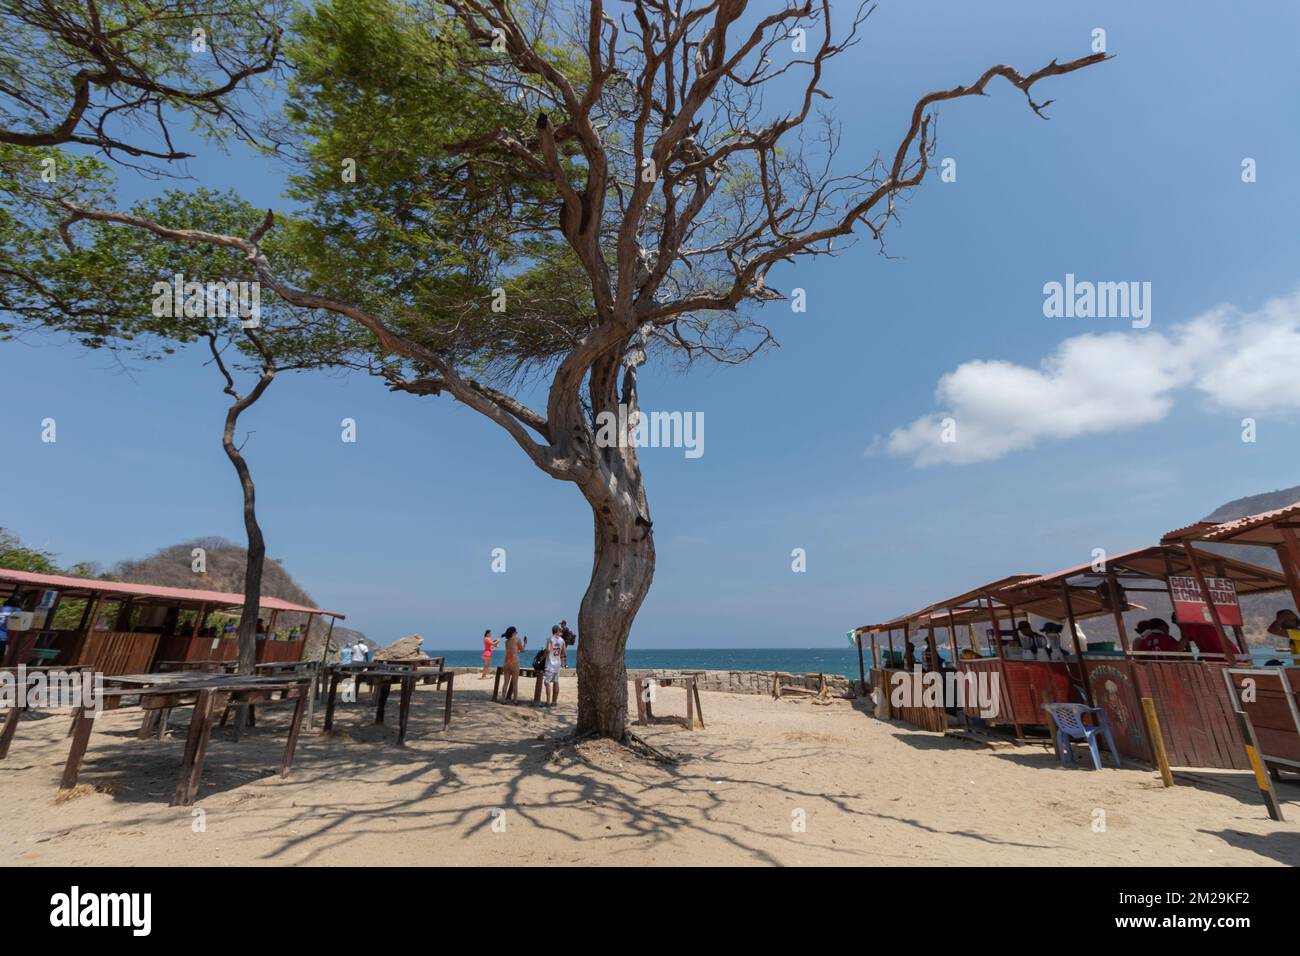 Grand arbre sain au milieu des bars et restaurants rustiques de la baie de concha à l'intérieur du parc naturel national de Tayrona Banque D'Images